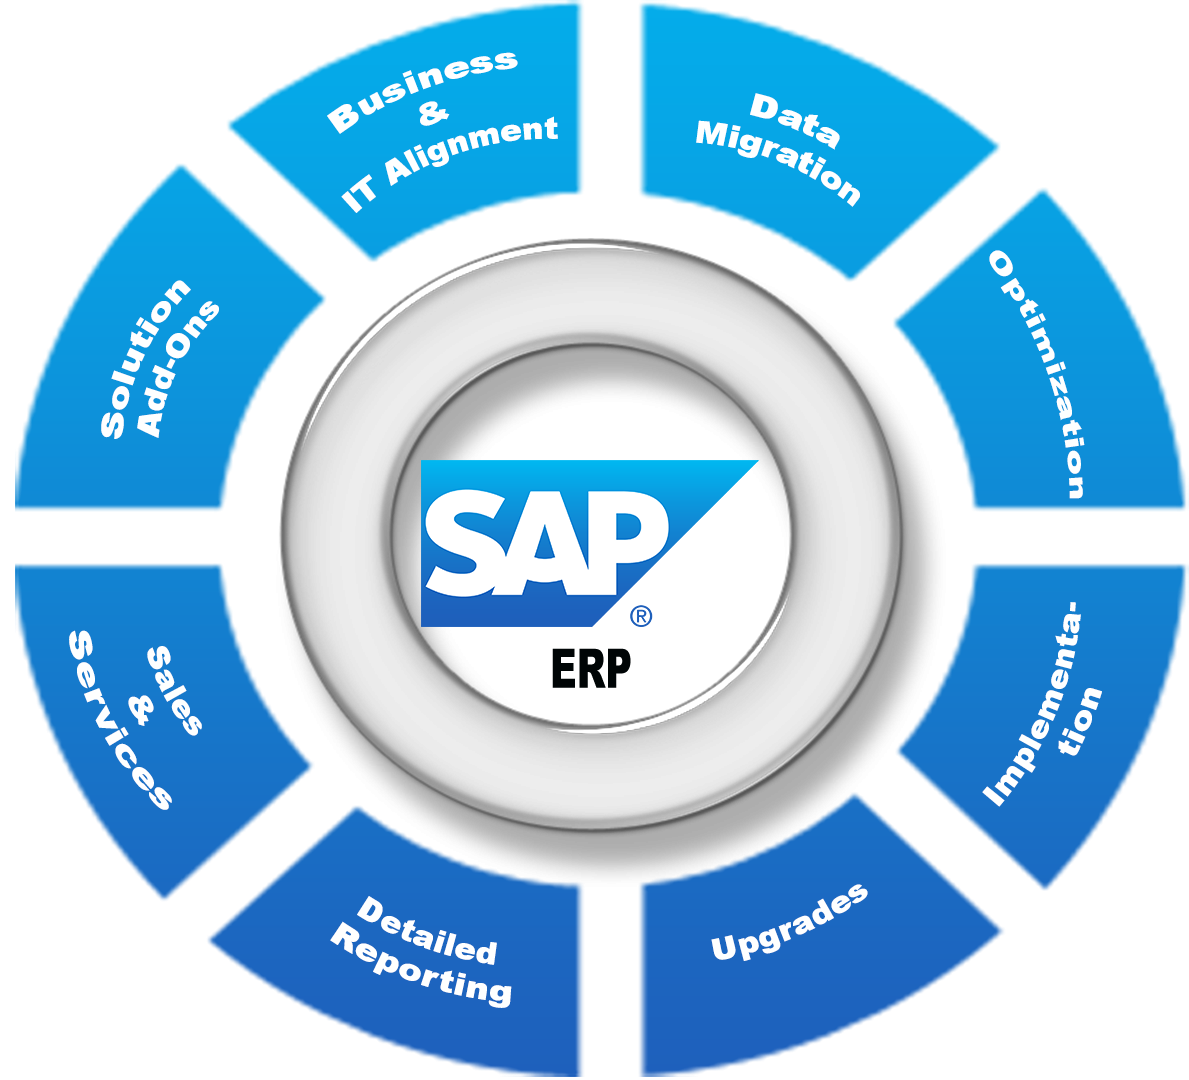 Chi phí triển khai SAP ERP